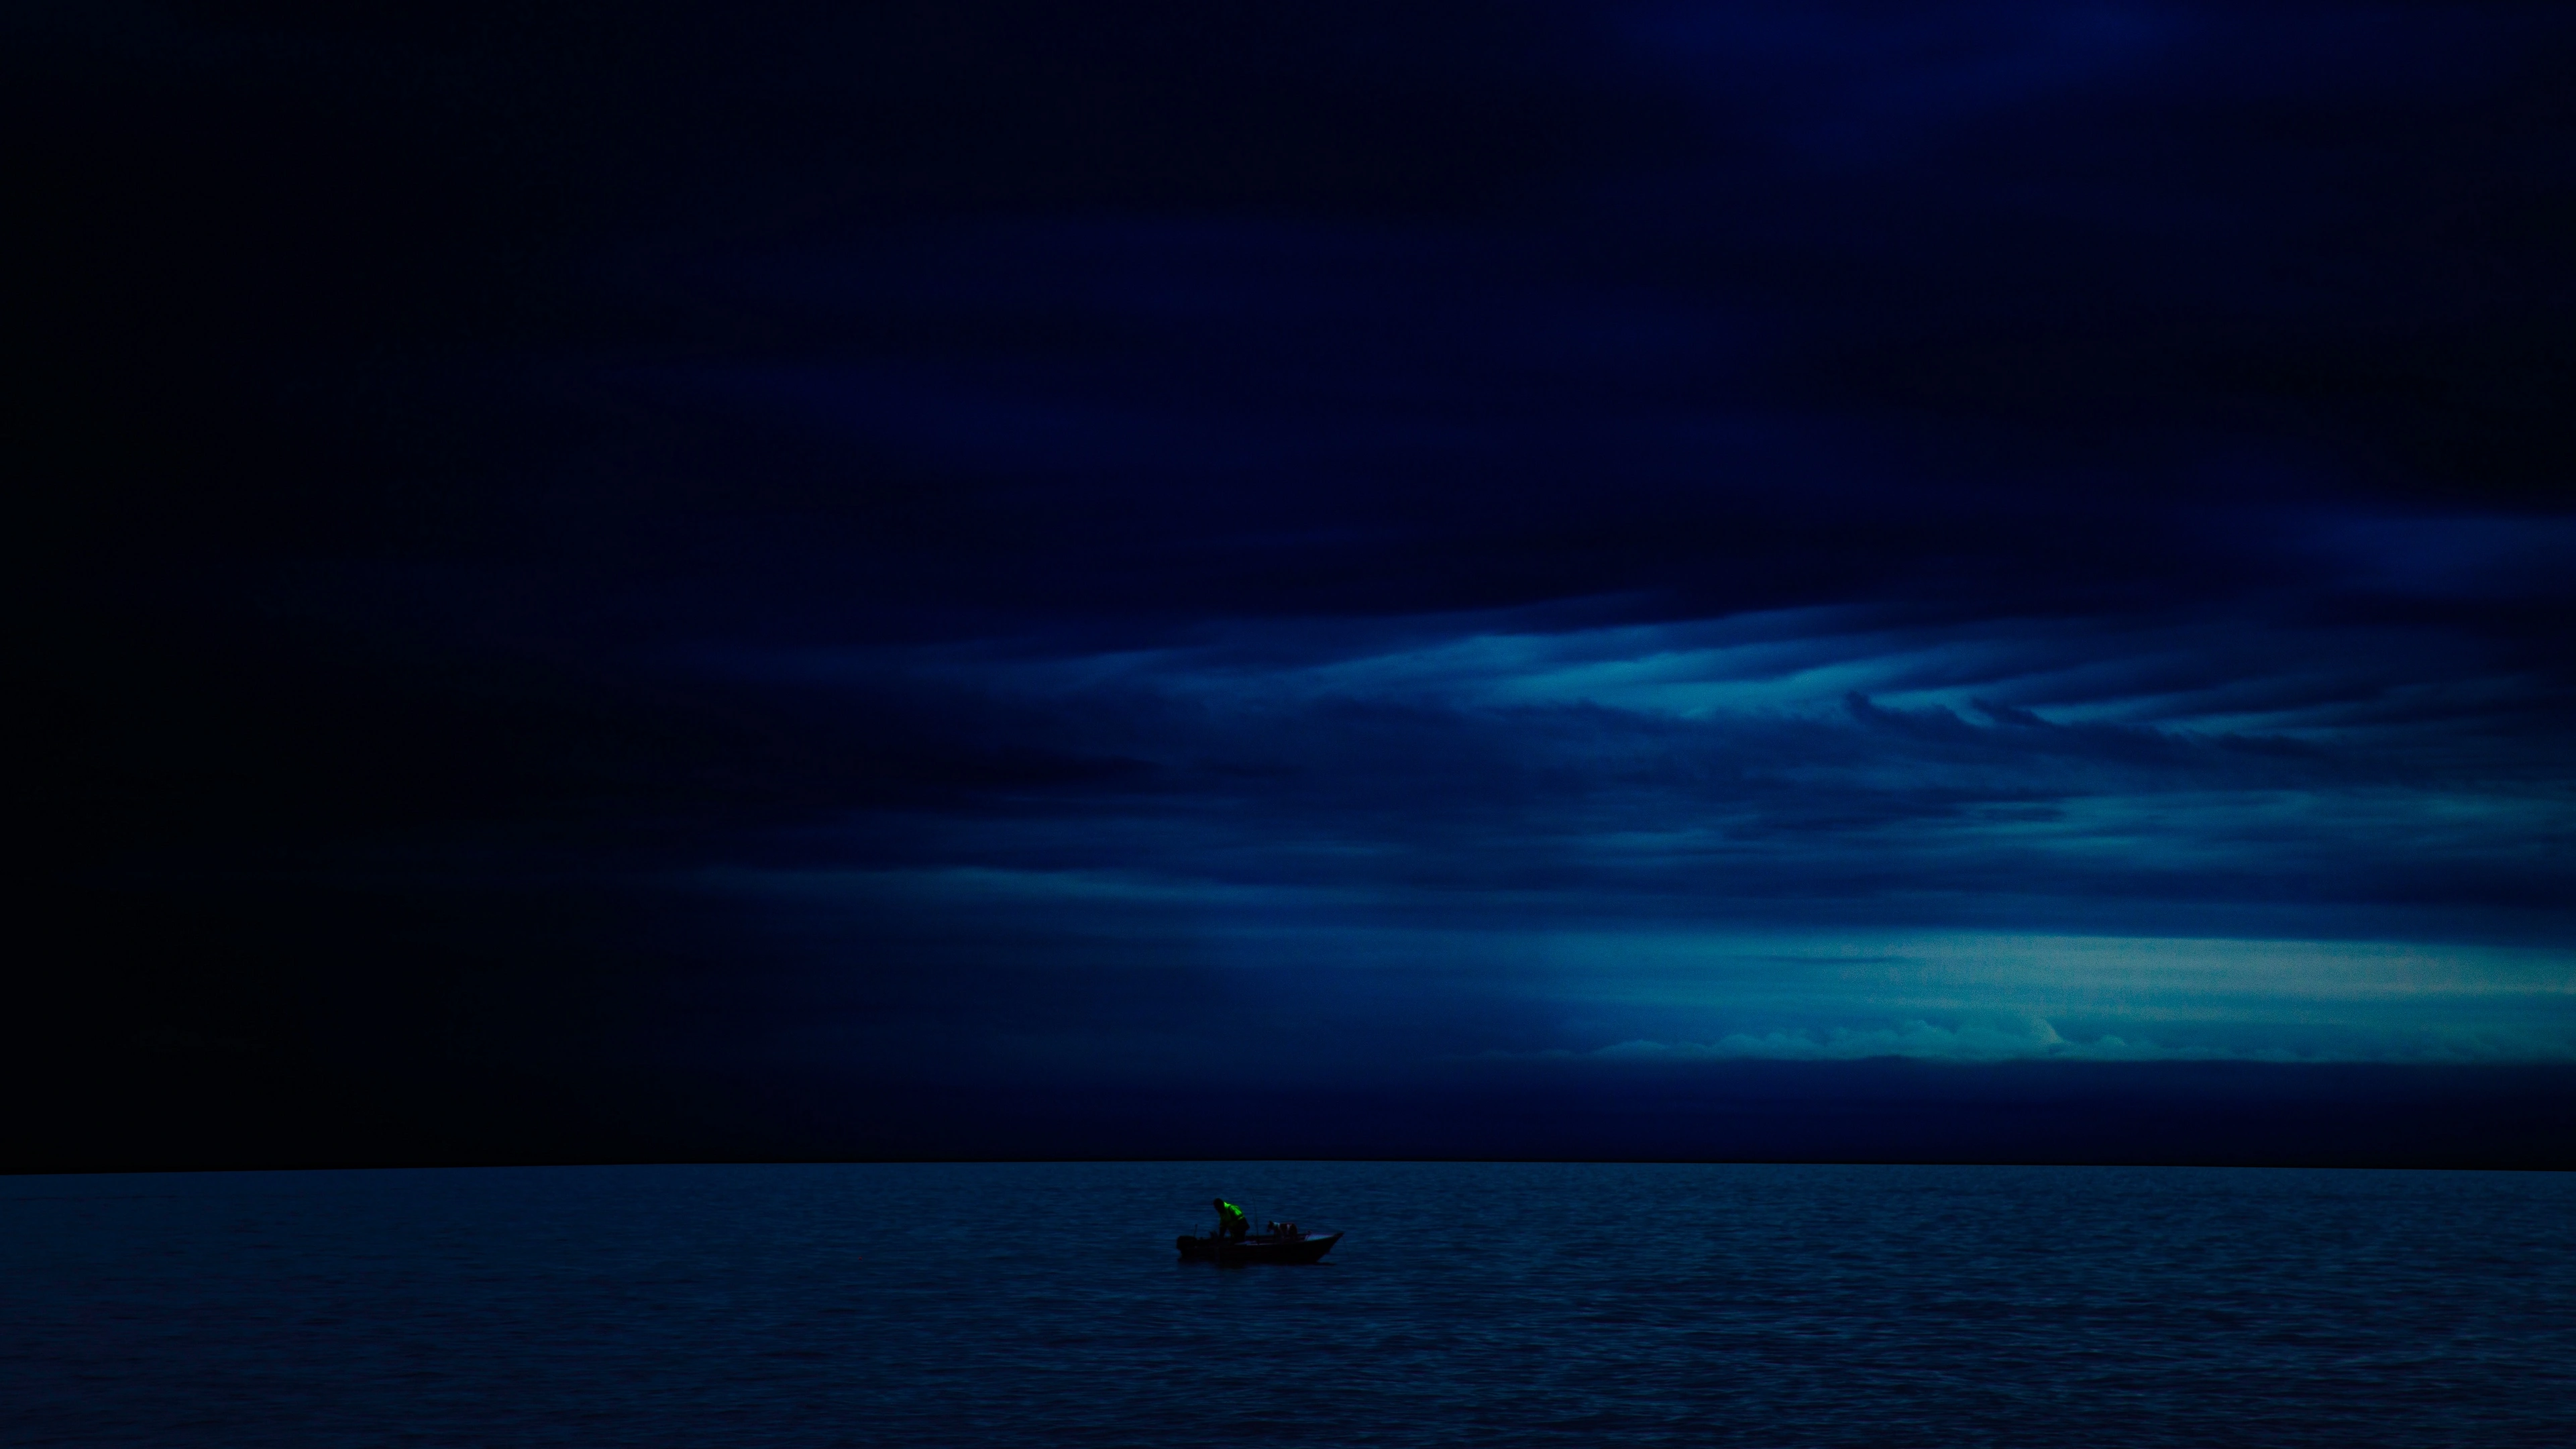 boat night horizon dark 4k 1540575549 - boat, night, horizon, dark 4k - Night, Horizon, Boat